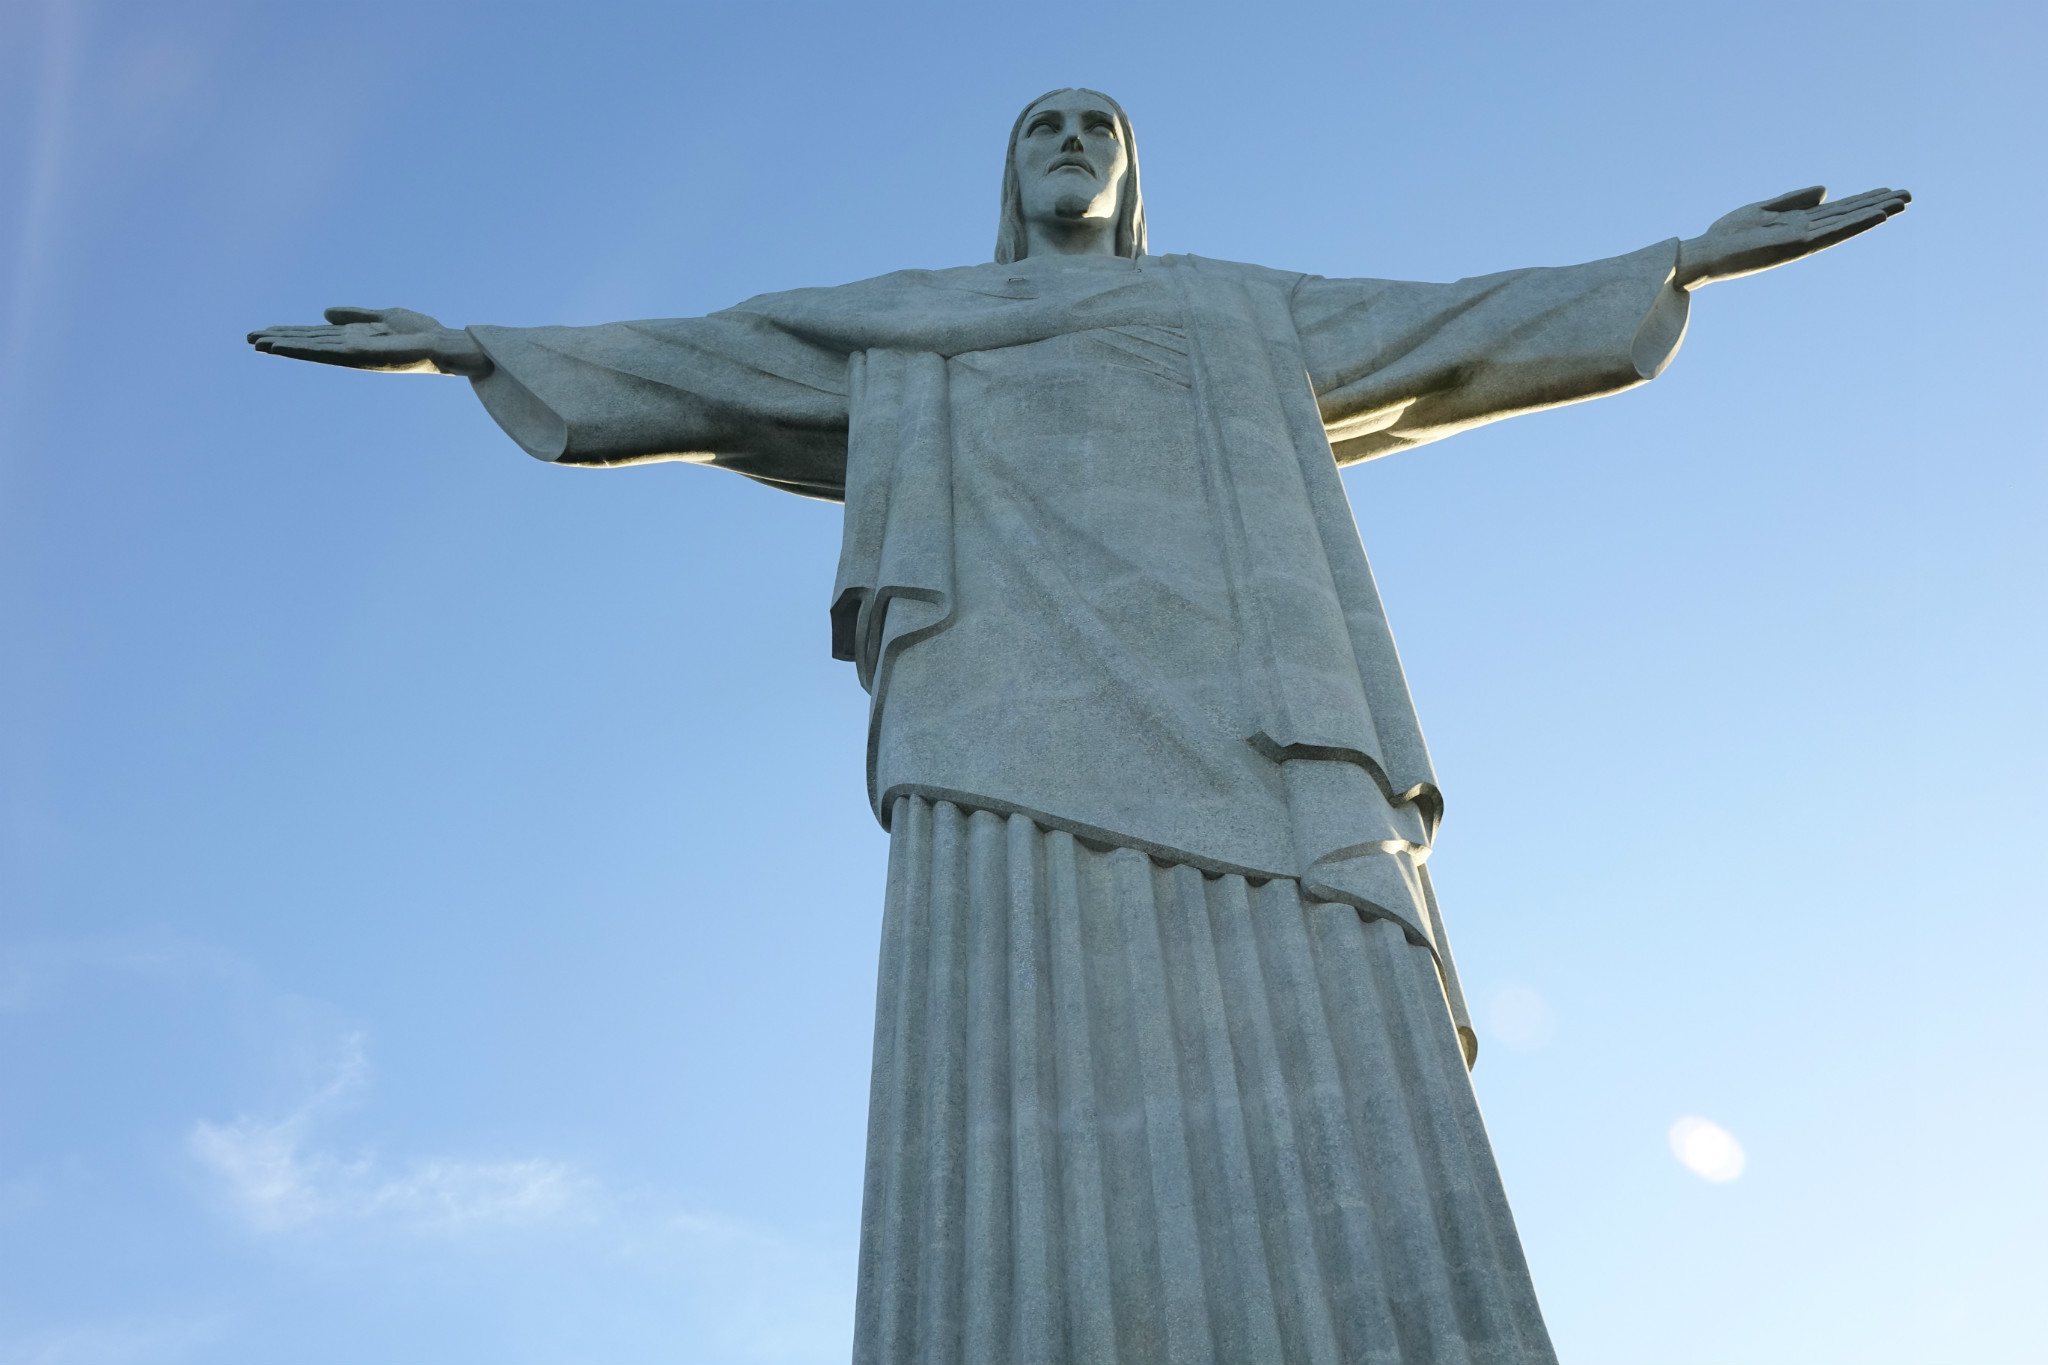 巴西耶稣像壁纸图片